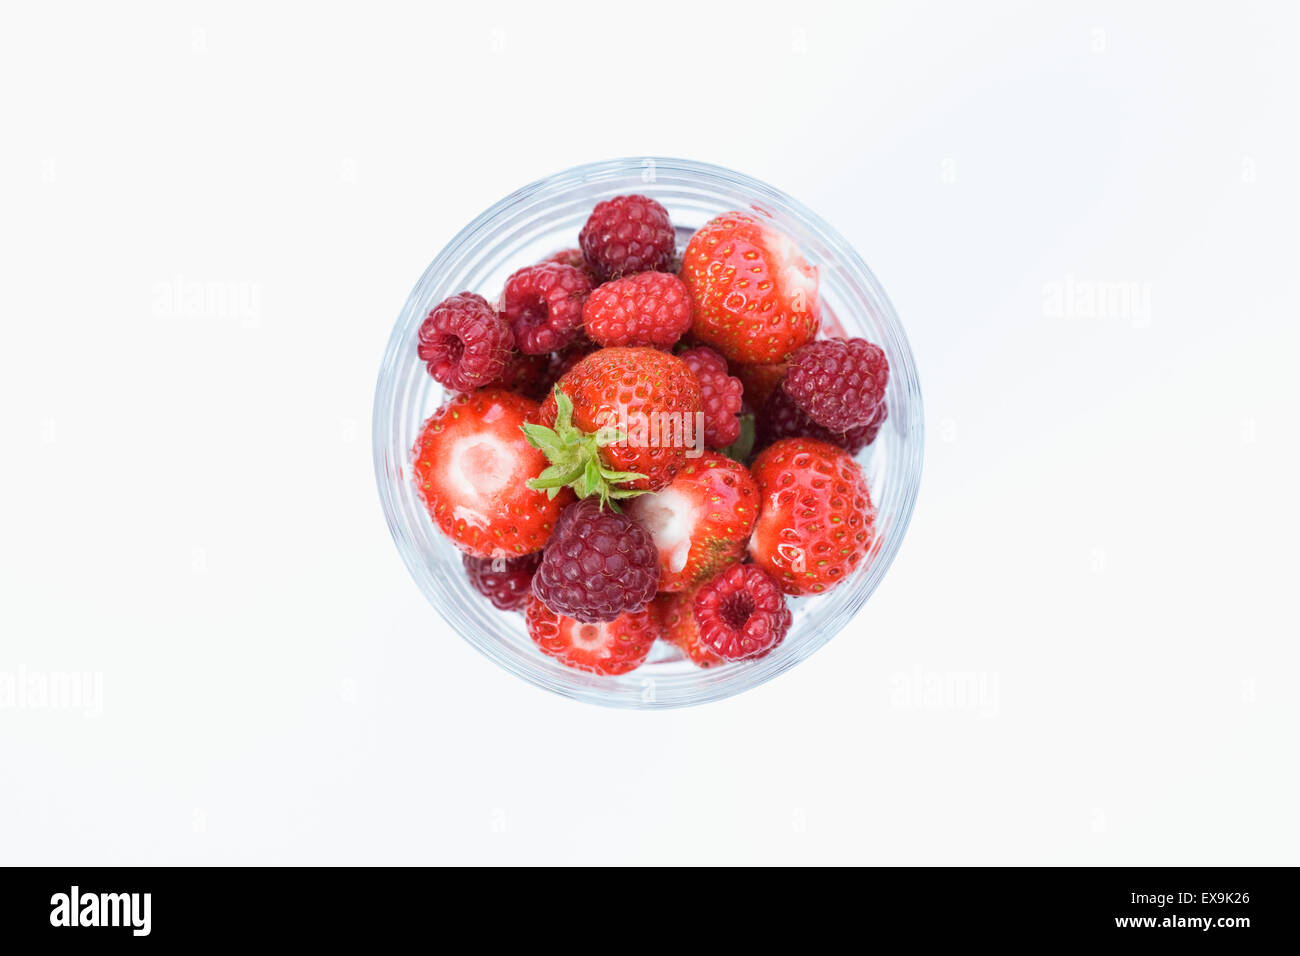 Appena raccolto i frutti a bacca rossa in un bicchiere. Foto Stock